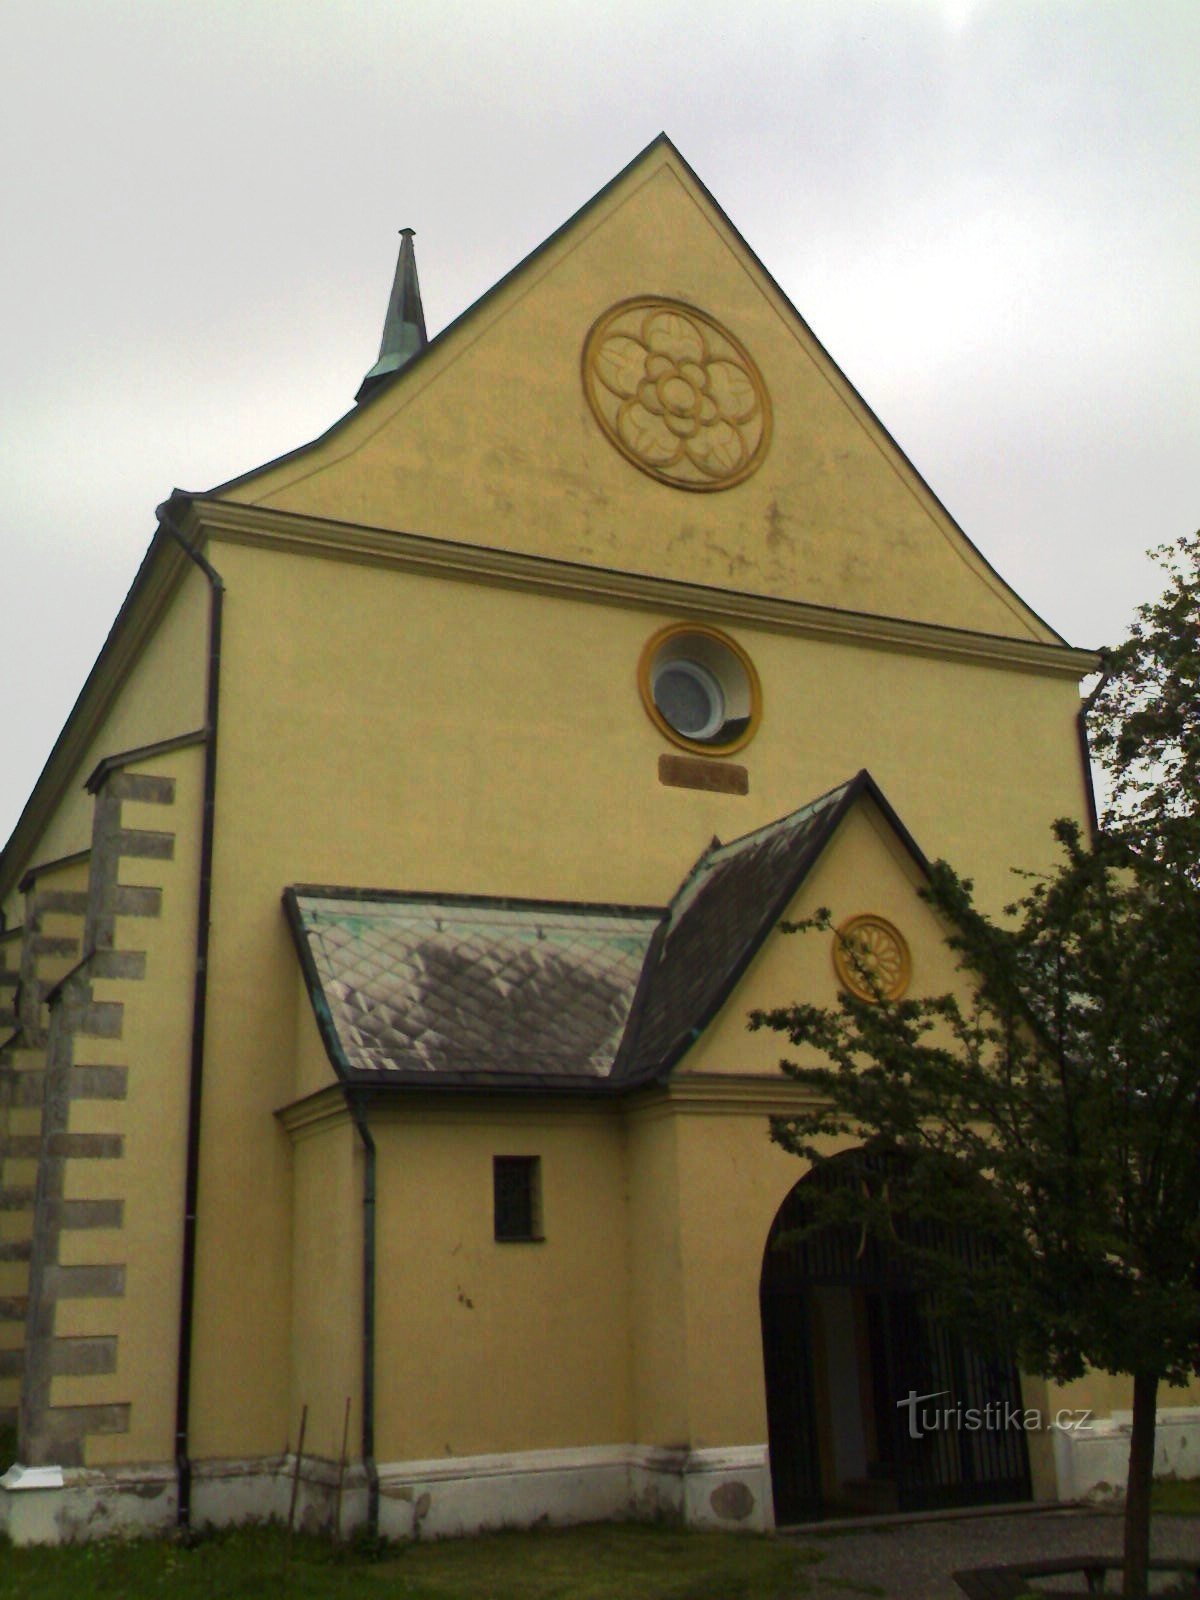 Rovensko pod Troskami - kościół św. Wacława